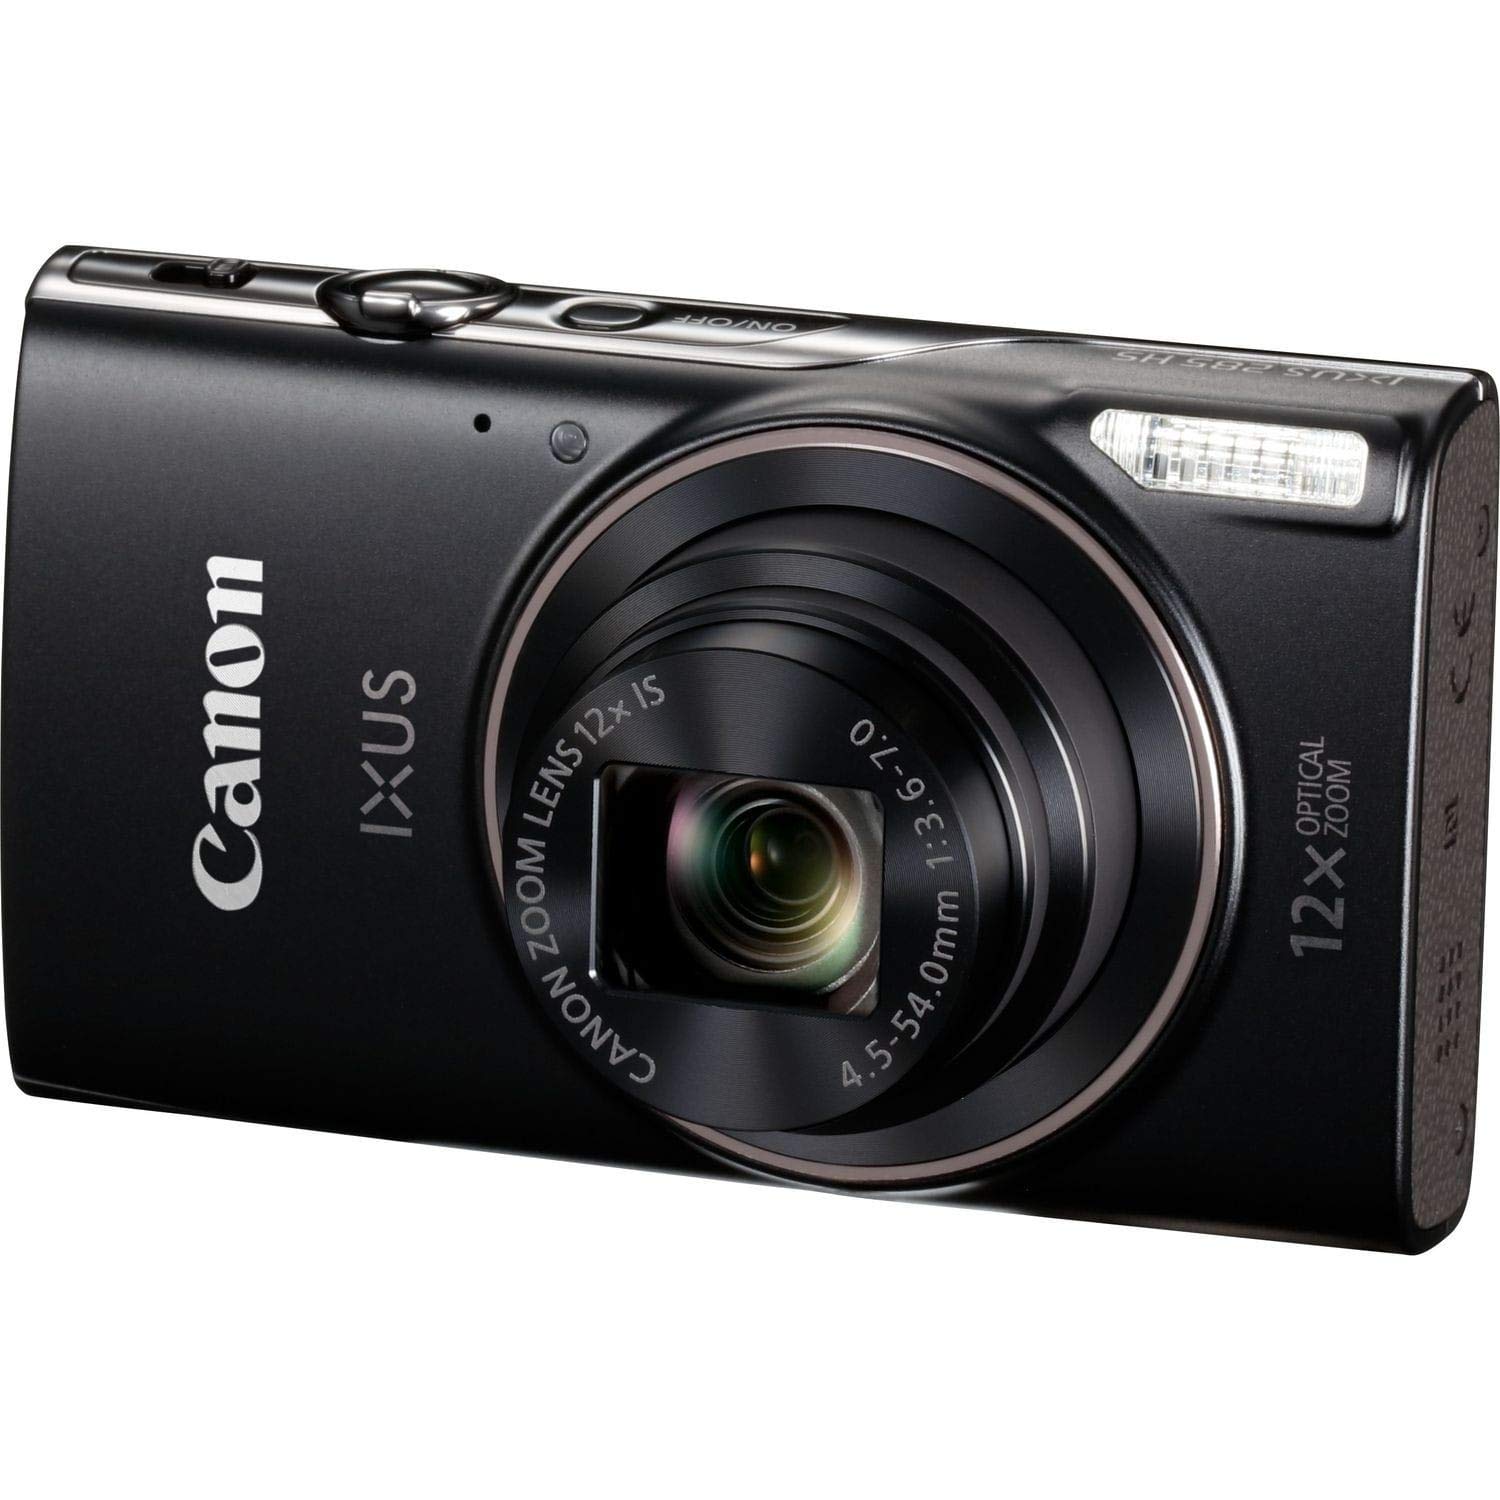 Canon イクサス 285 HS ブラック 1076C001 (インターナショナルモデル)...